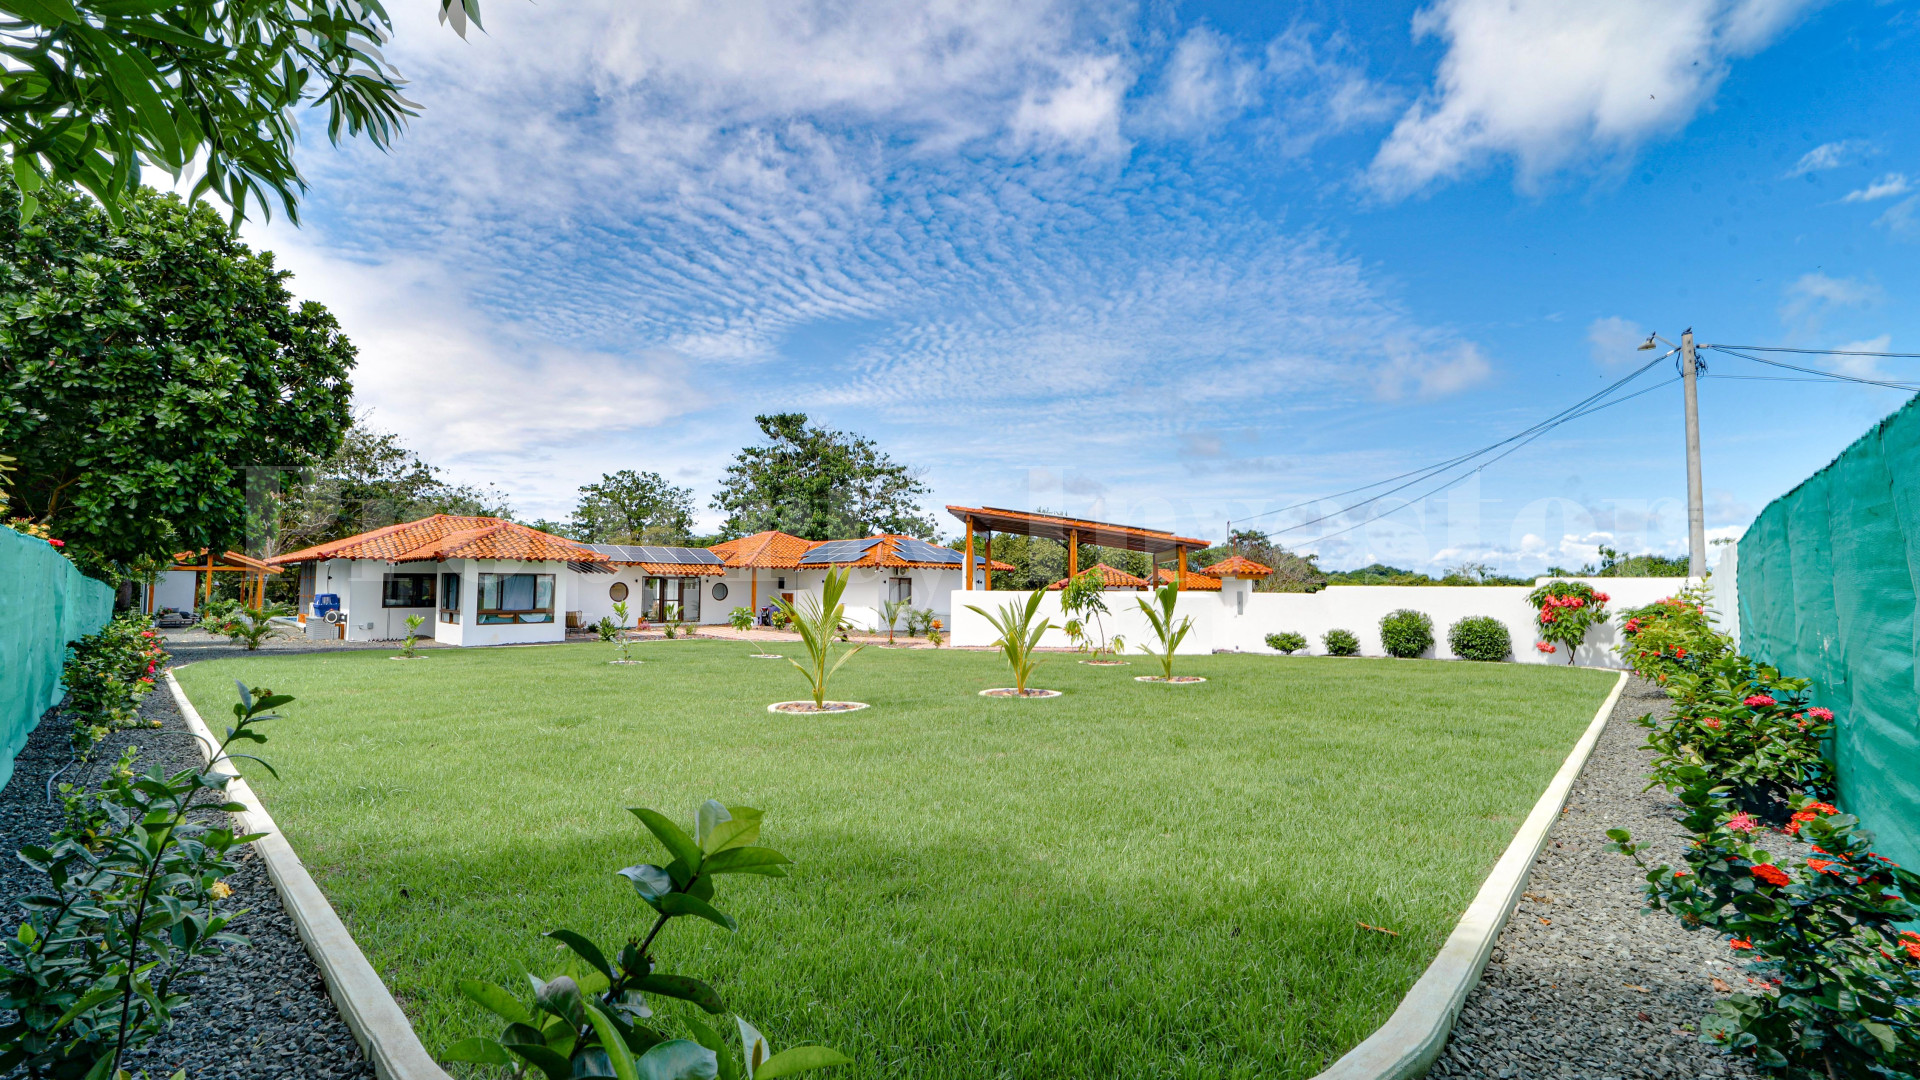 Продаётся фантастическая частная резиденция на 3 спальни с красивым ухоженным садом в Педаси, Панама